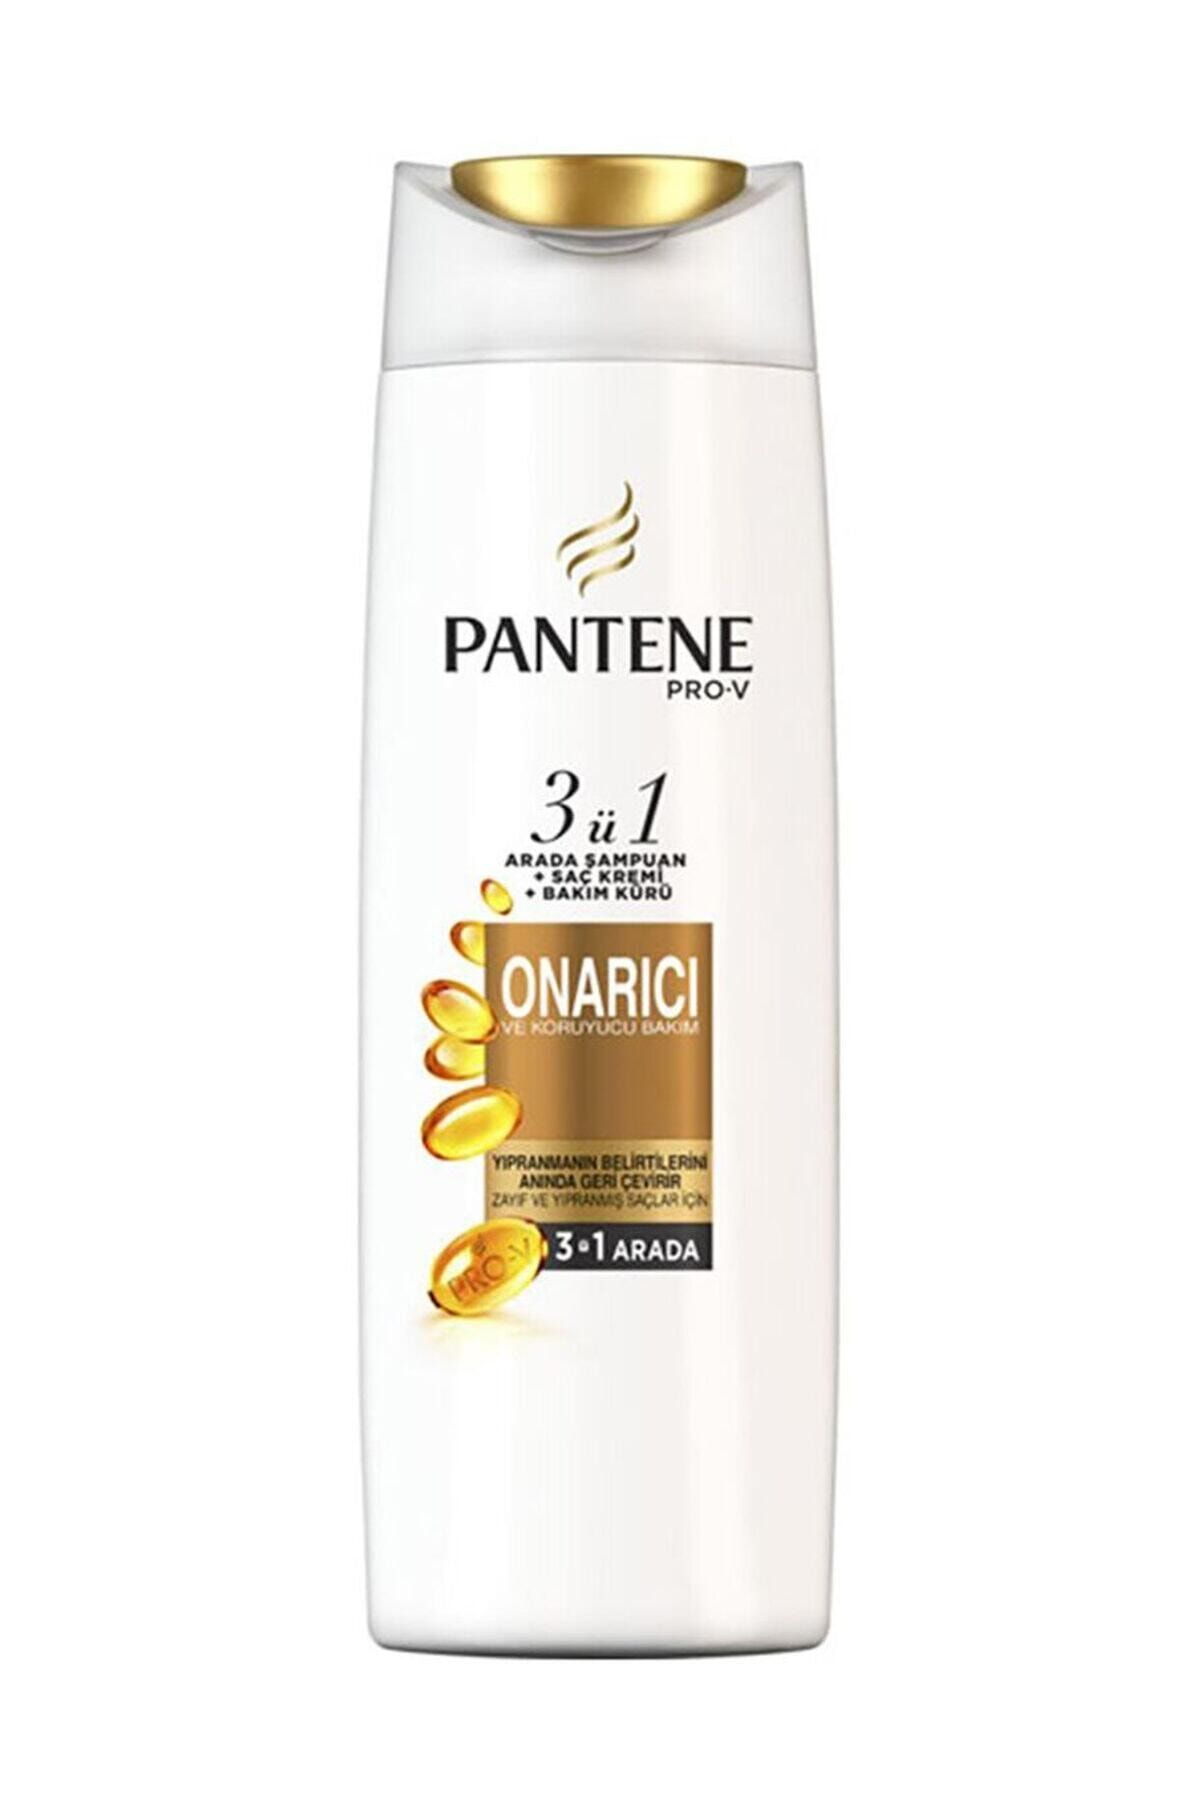 Pantene 3'ü 1 Arada Şampuan ve Saç Bakım Kremi Onarıcı ve Koruyucu Bakım 470 ml